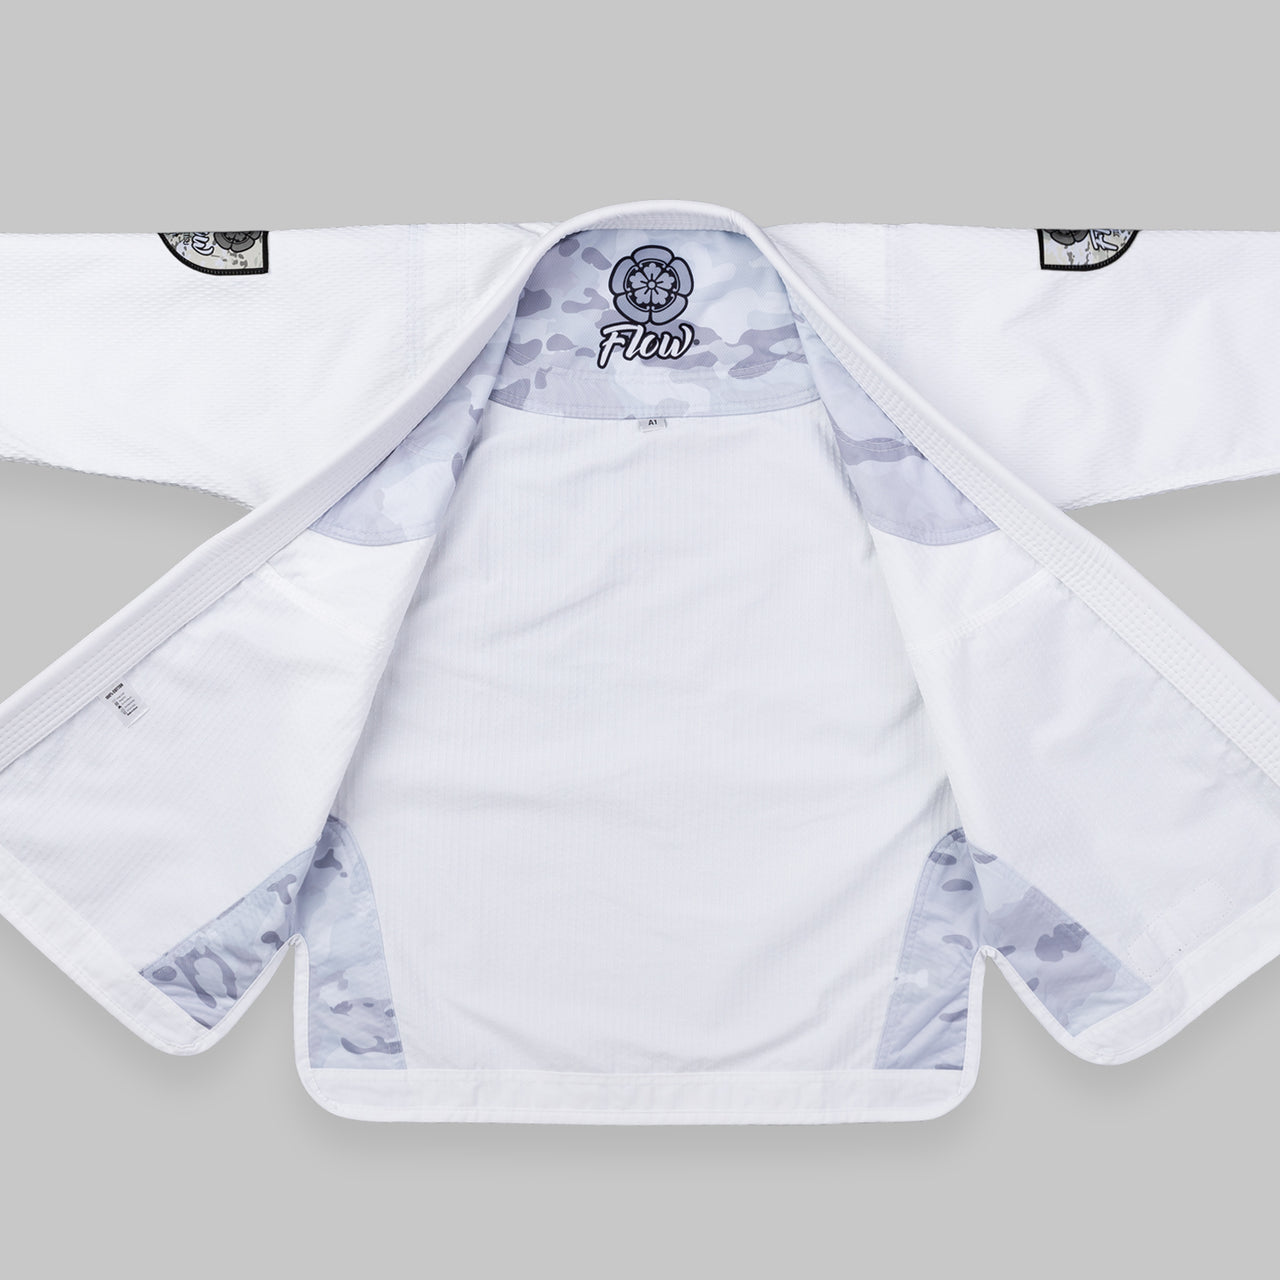 Flow Kimonos Alpine Pro 2.6 White